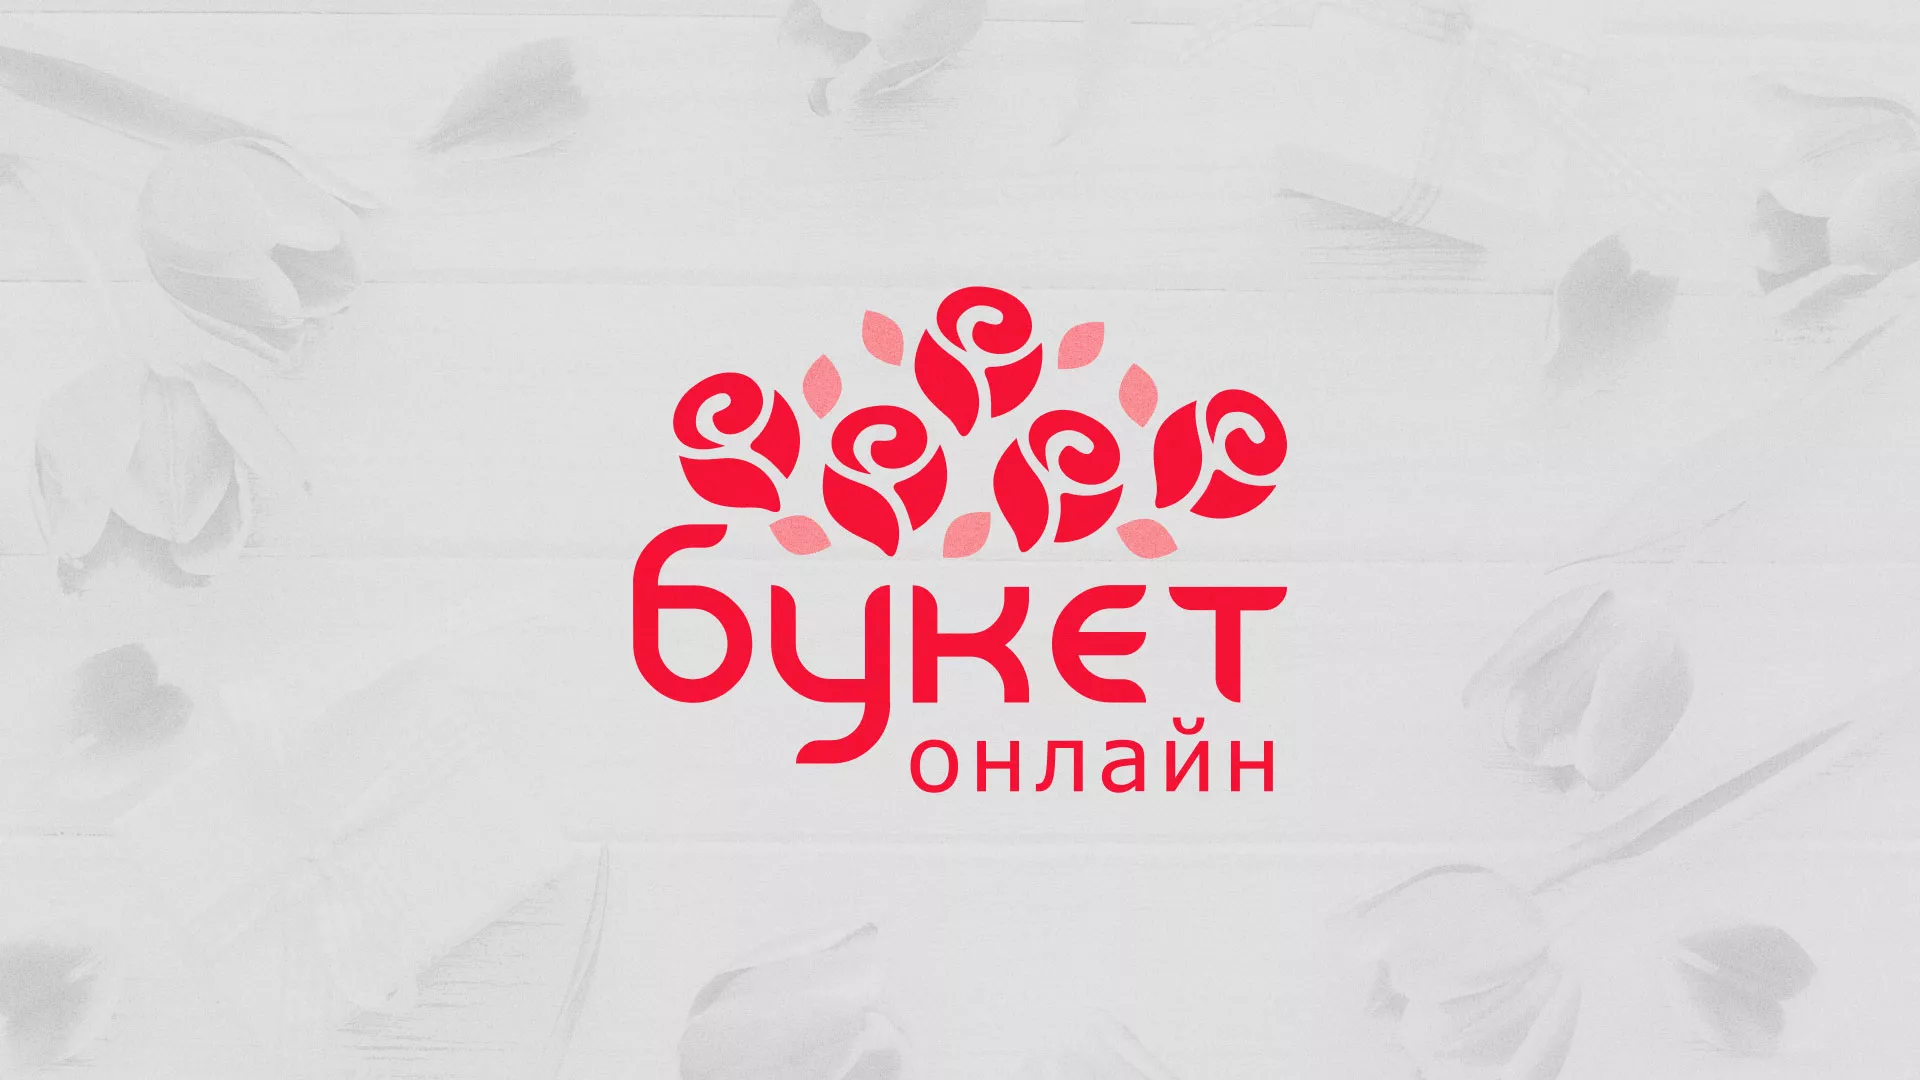 Создание интернет-магазина «Букет-онлайн» по цветам в Колпашево